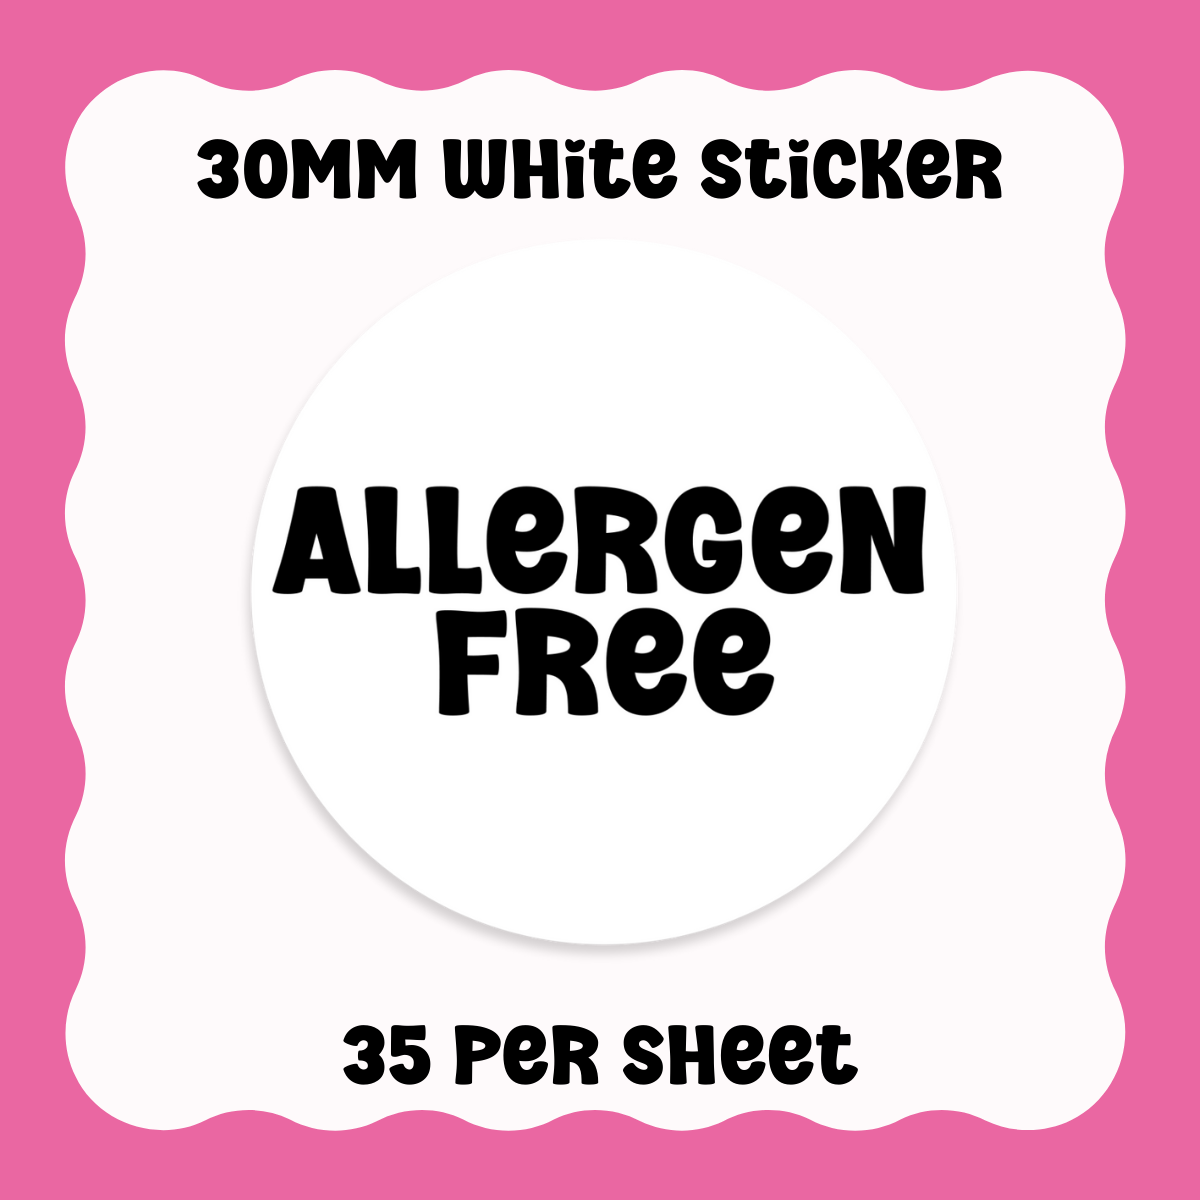 Allergen Free Stickers - Text only